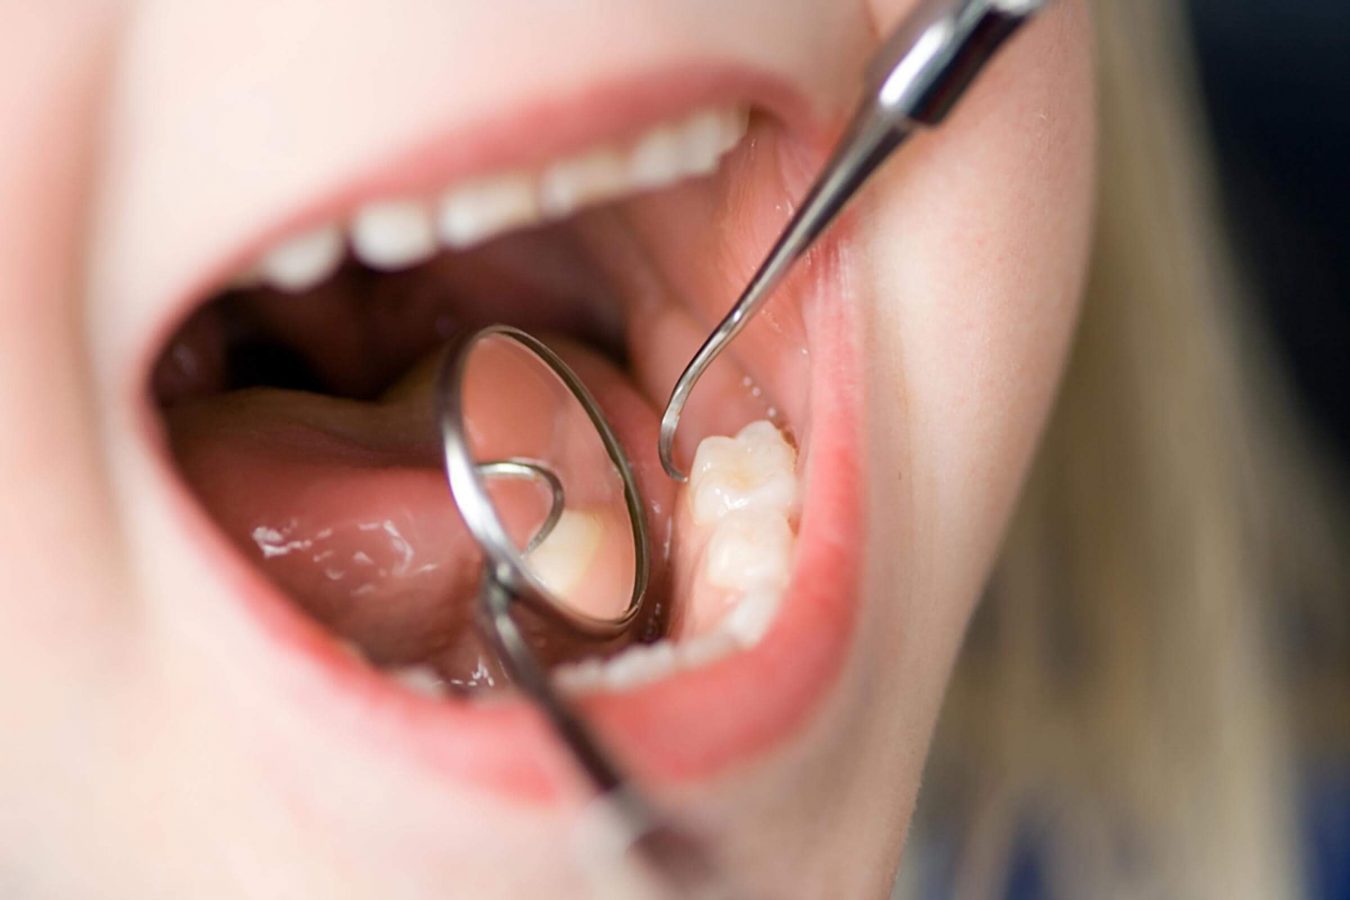 Les morsures des joues et de la langue. — Conseil Dentaire Dr